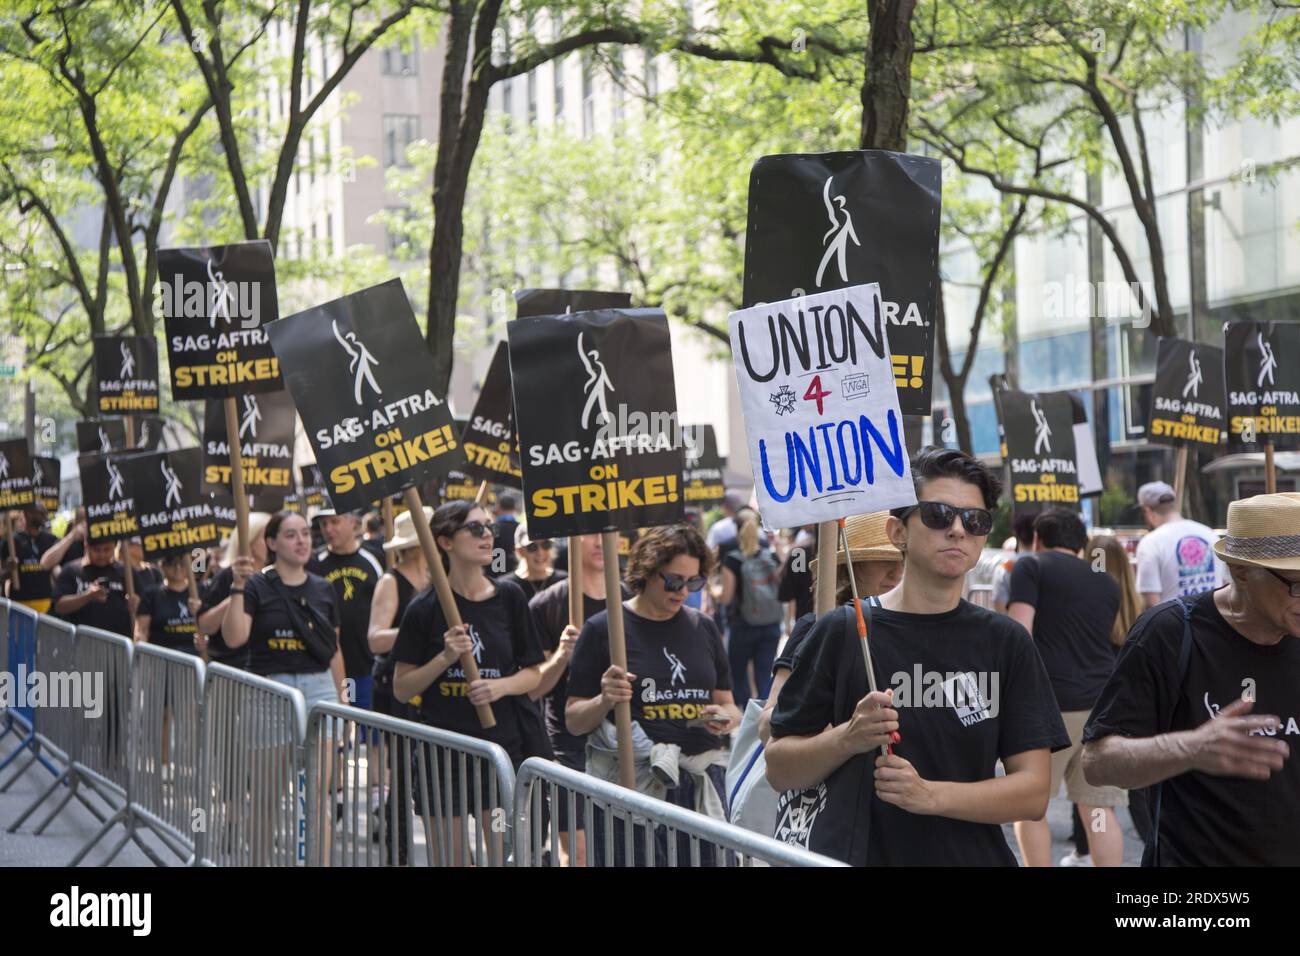 New York City: Lo sciopero continua tra gli Writers Guild of America insieme ai membri del sindacato SAG-AFTRA con linee di picchetto in più località a Manhattan. Gli scioperanti si esibiscono all'esterno degli NBC Studios sulla W. 49th Street del Rockefeller Center, paralizzando l'industria dello spettacolo. Foto Stock